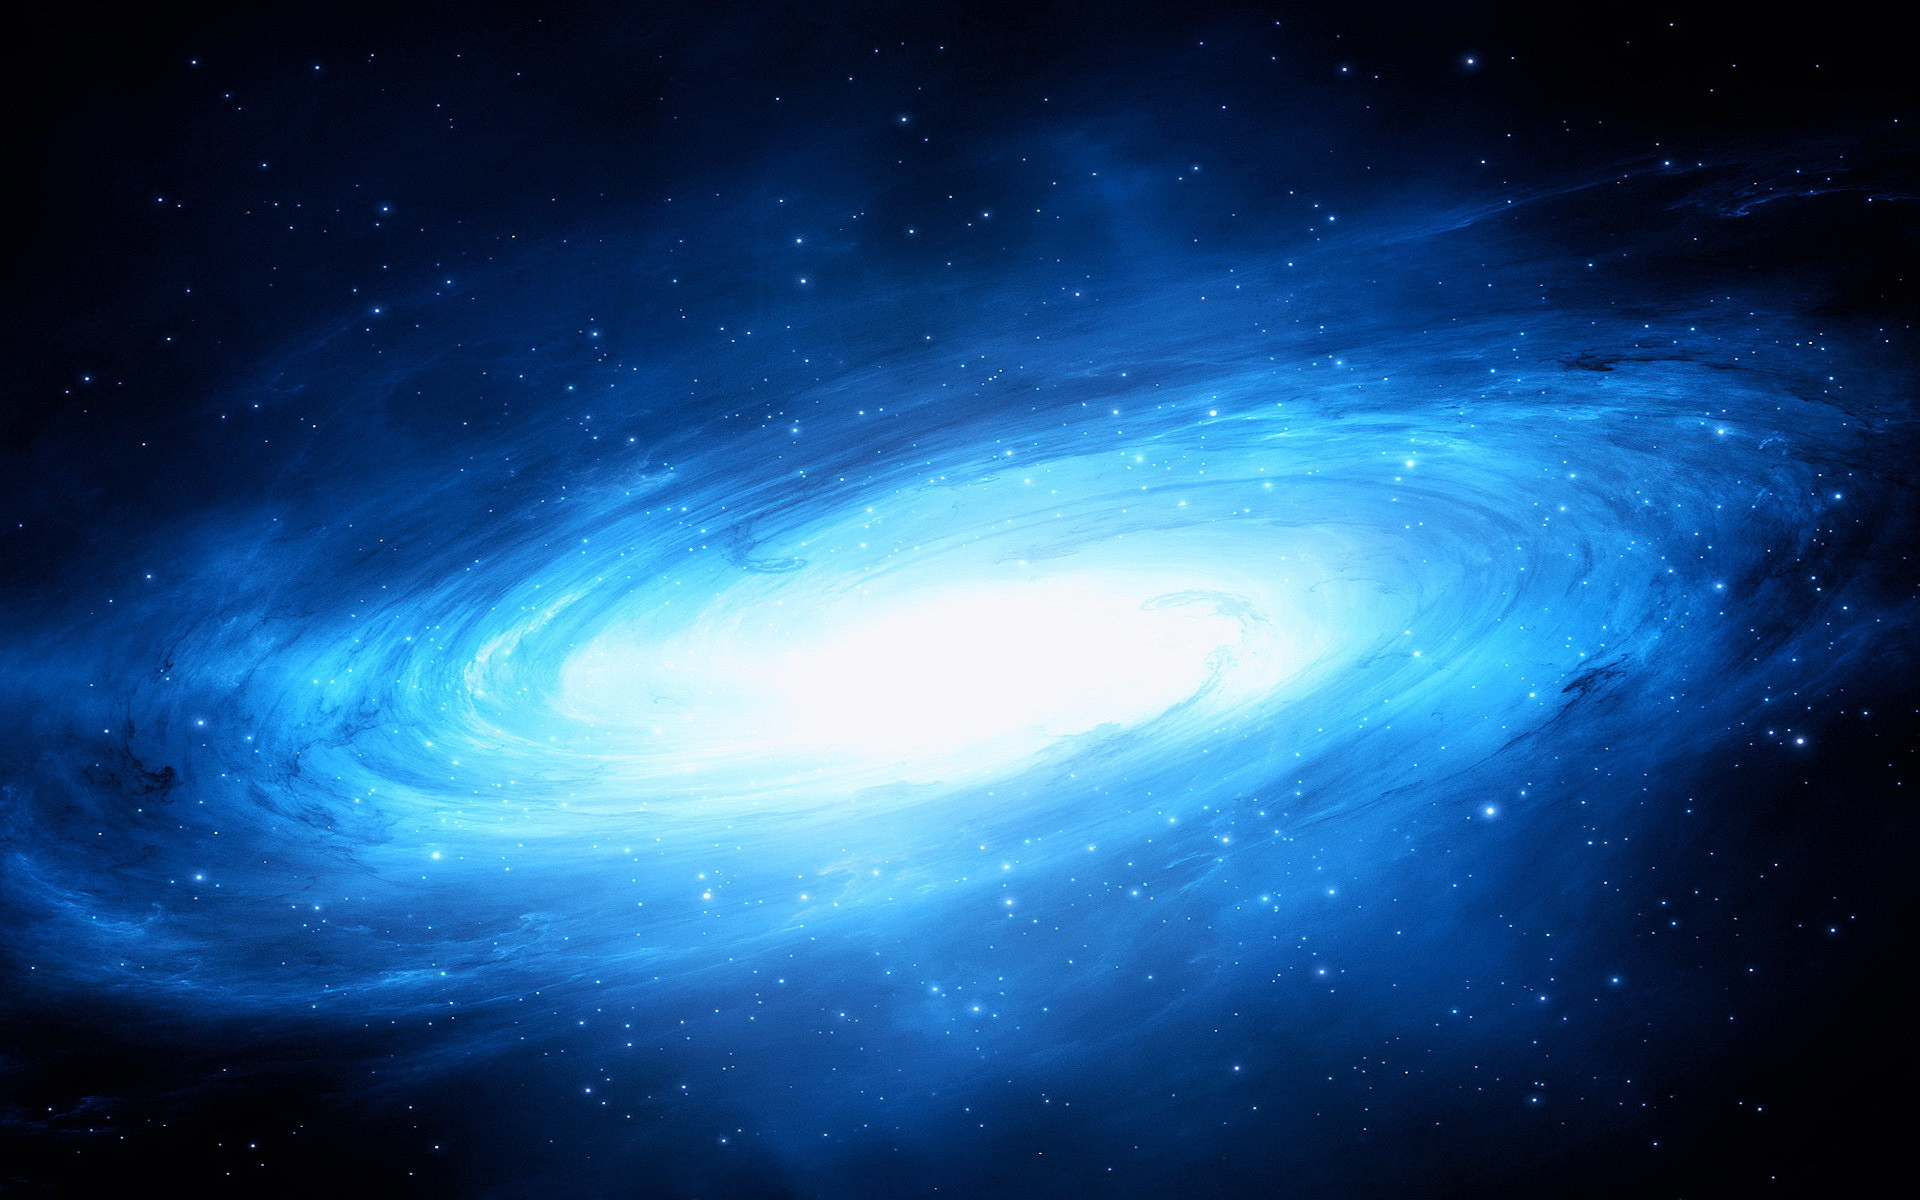 Bạn có bao giờ thèm muốn một hình nền vũ trụ màu xanh dương lấp lánh trên màn hình? Với hình ảnh này, bạn sẽ cảm nhận được sức mạnh màu sắc và sự rực rỡ của vũ trụ. Đừng bỏ lỡ cơ hội để thưởng thức hình ảnh tuyệt vời này.